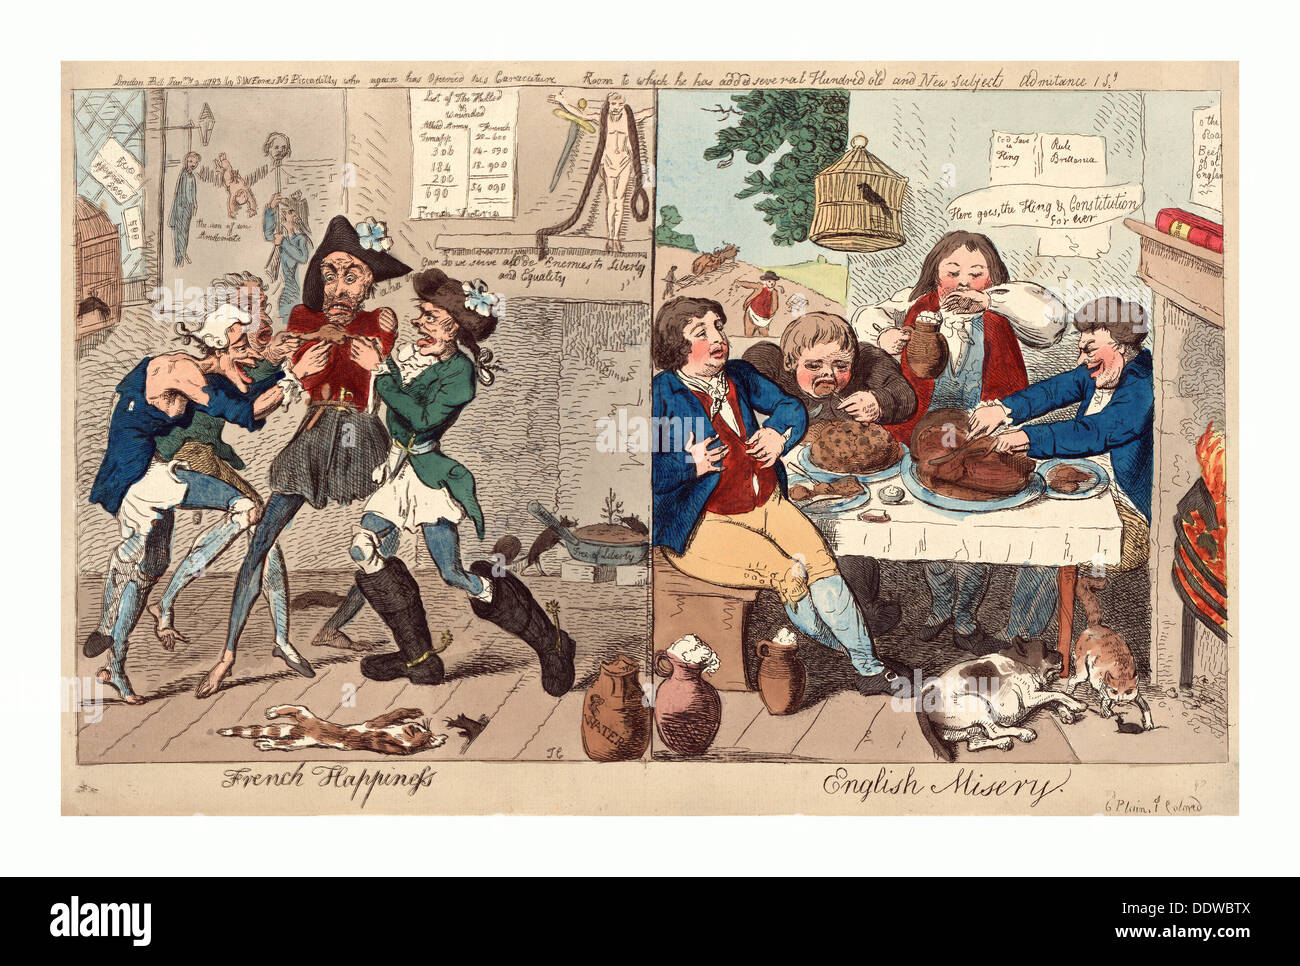 Le bonheur Français English la misère, Cruikshank, Isaac, 1756 ?-1811 ?, gravure 1793, sur la gauche, quatre affamés et en haillons Banque D'Images